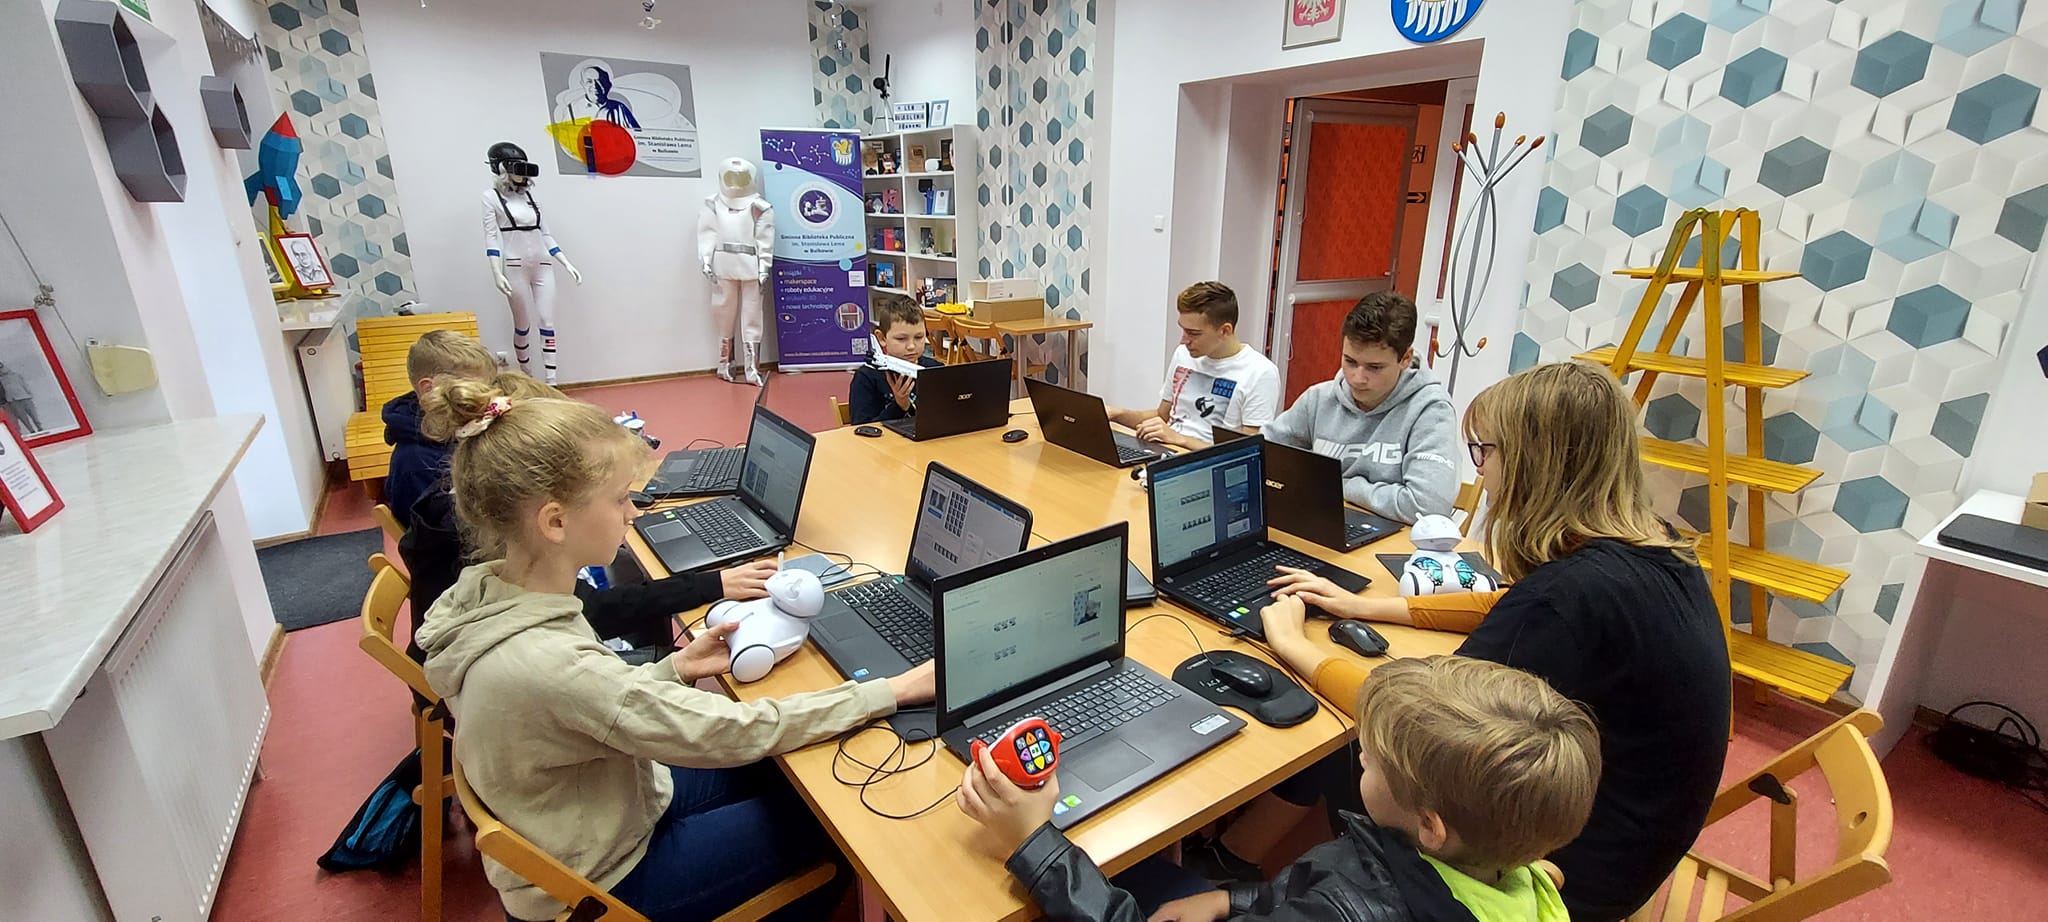 Grupa dzieci siedzących przy komputerach podczas projektowania własnych zabawek.